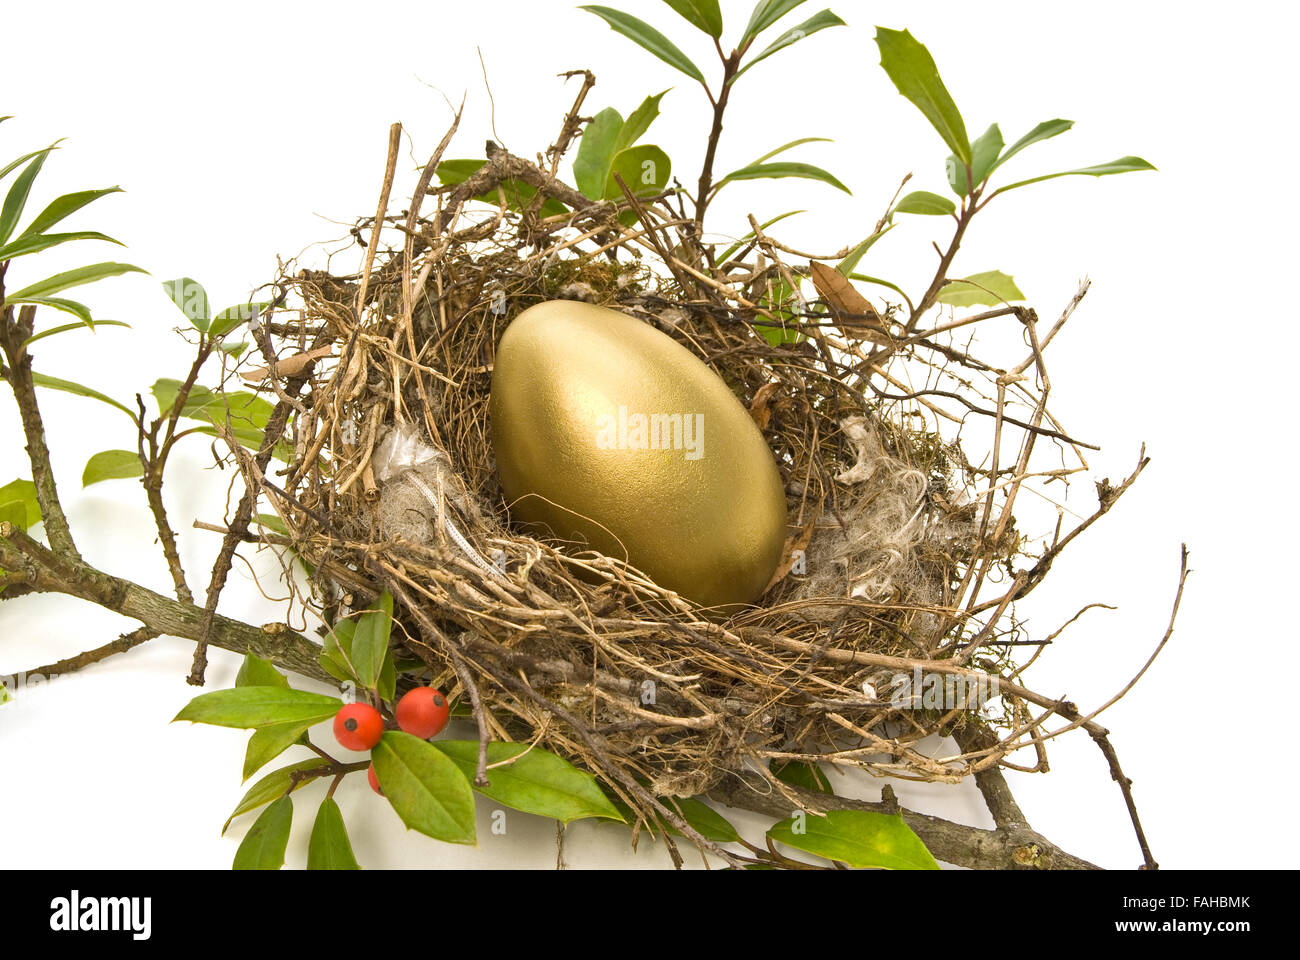 Gold Egg In Bird’s Nest Stock Photo